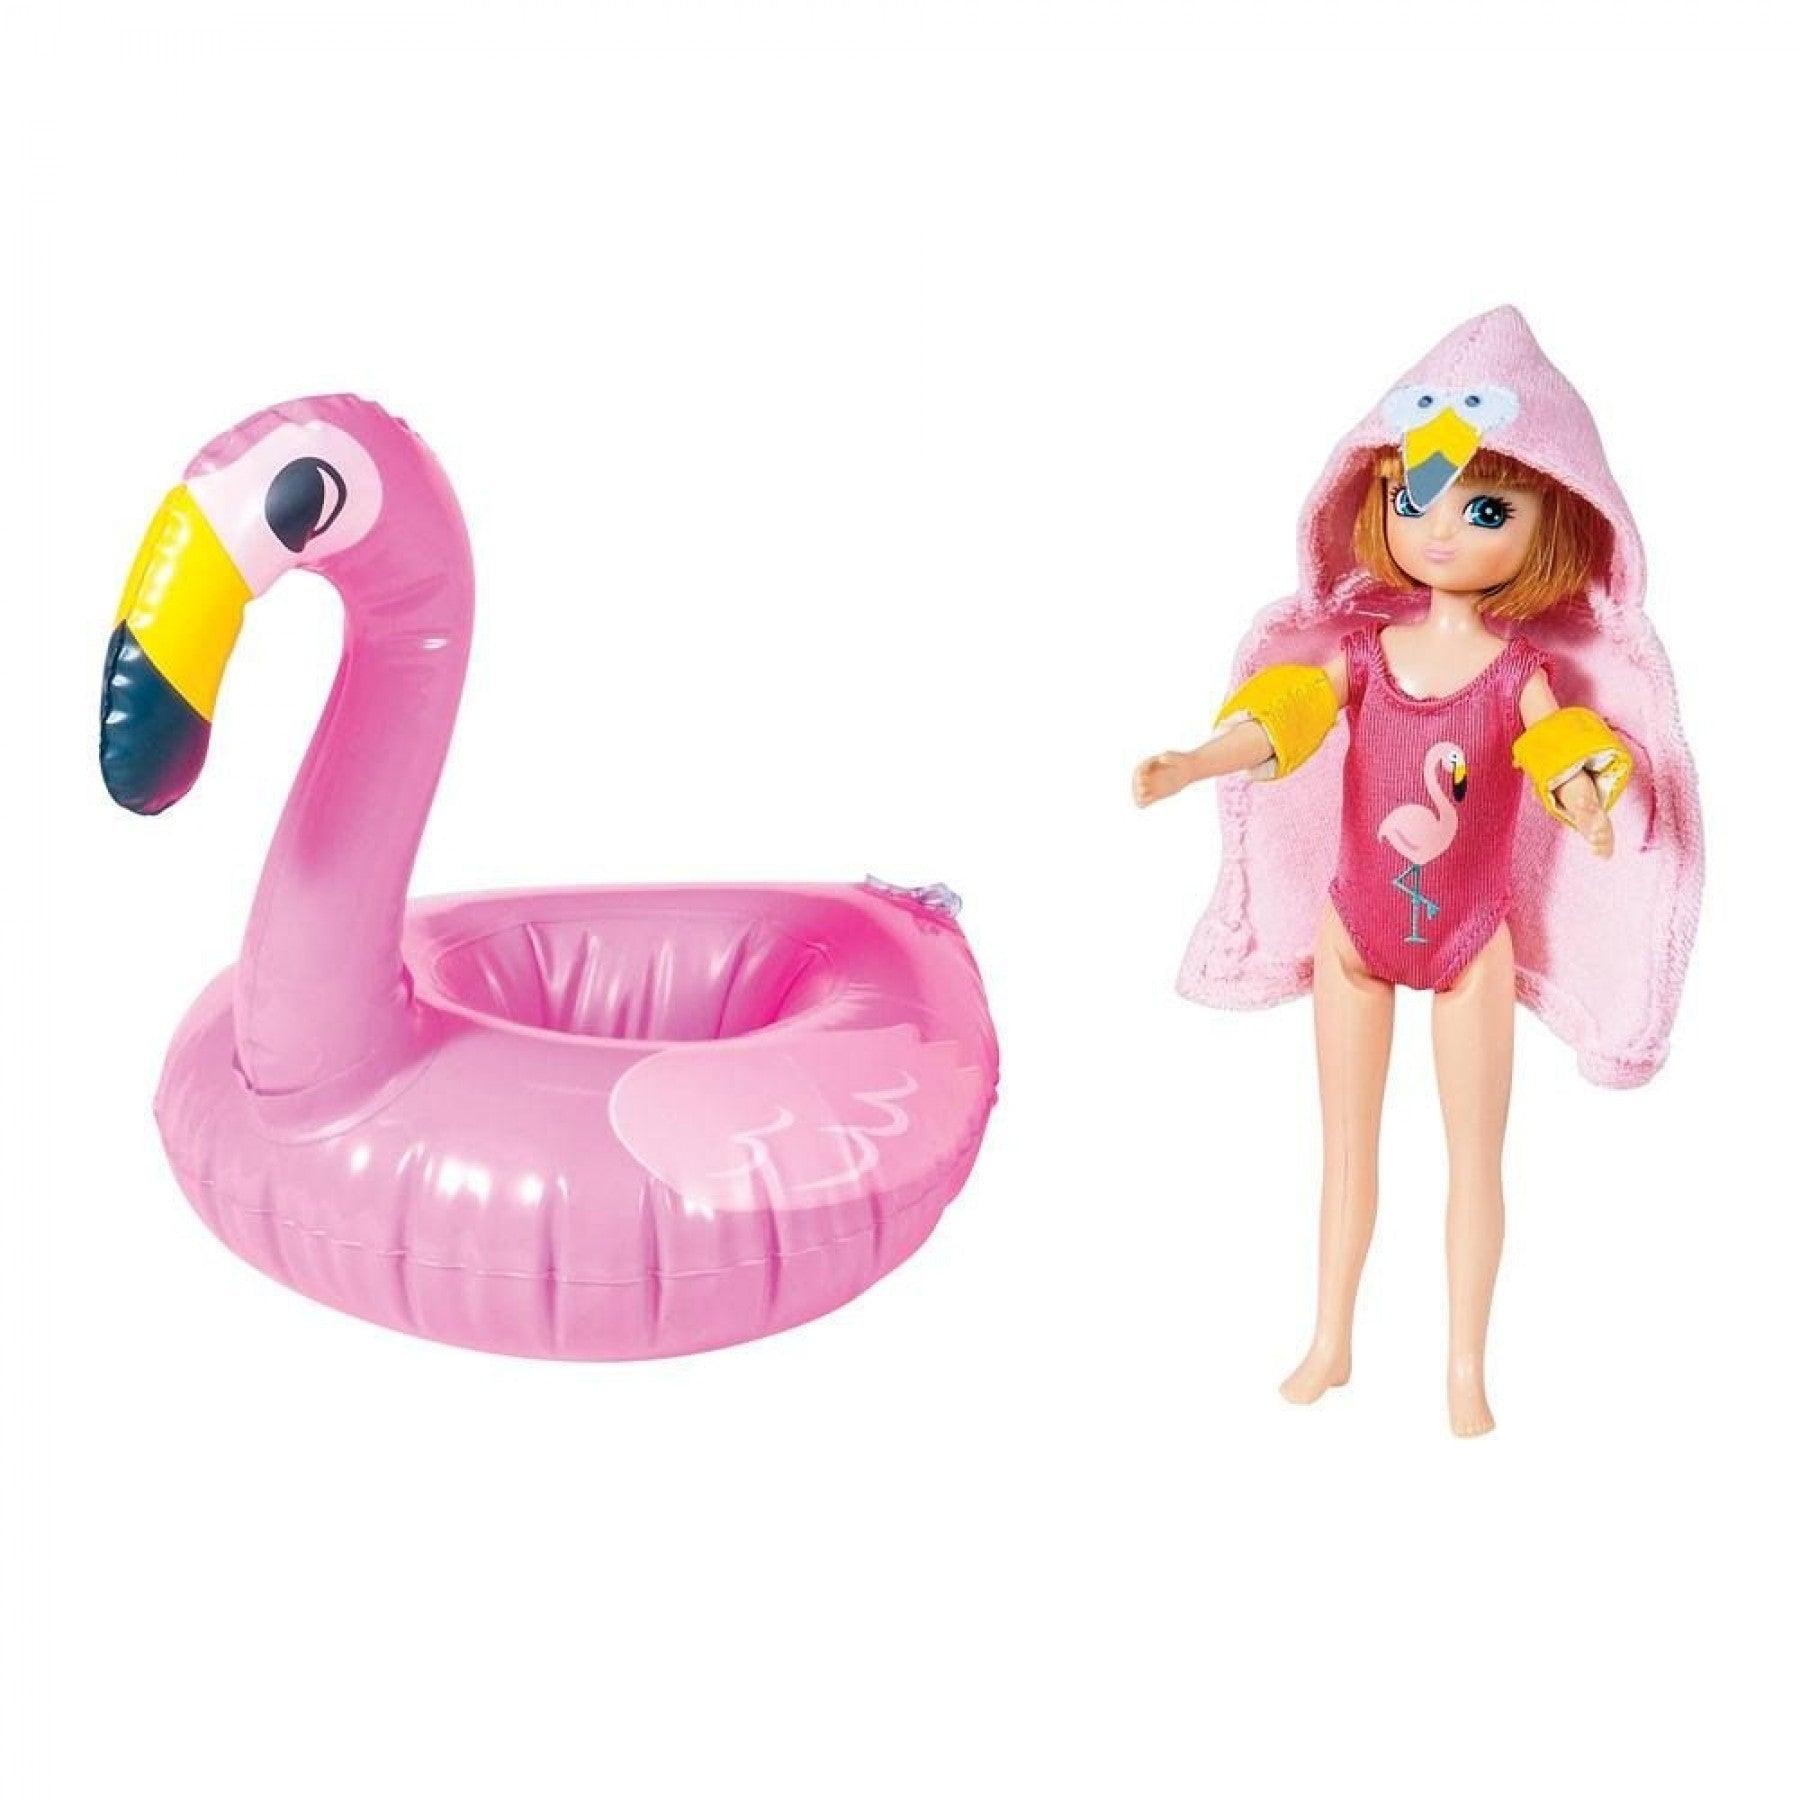 Lottie: Pool Party bathing suit doll